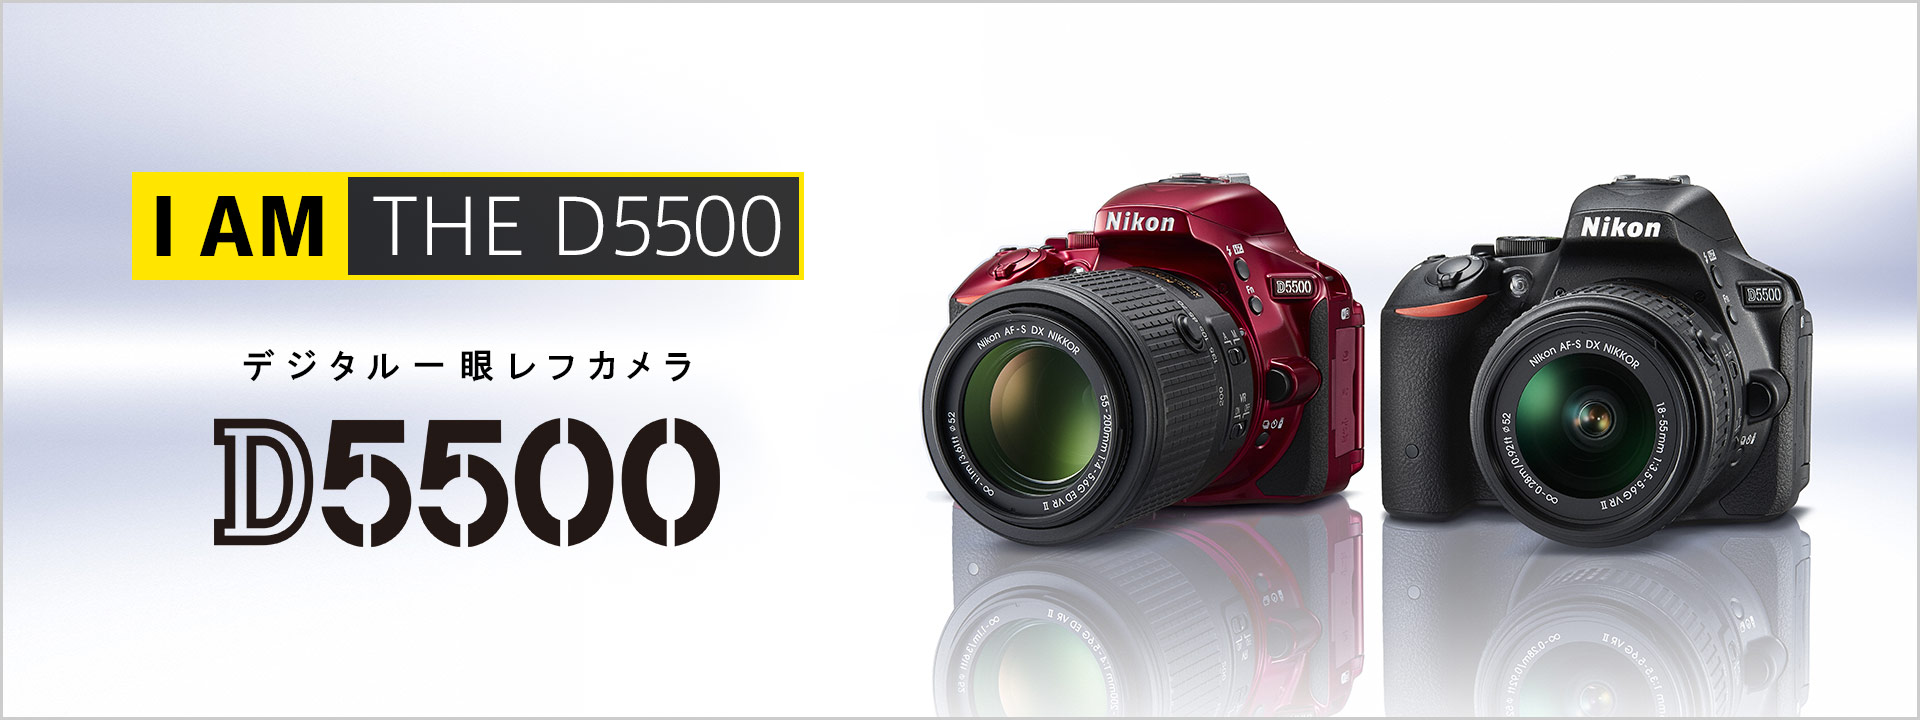 D5500 - 概要 | 一眼レフカメラ | ニコンイメージング